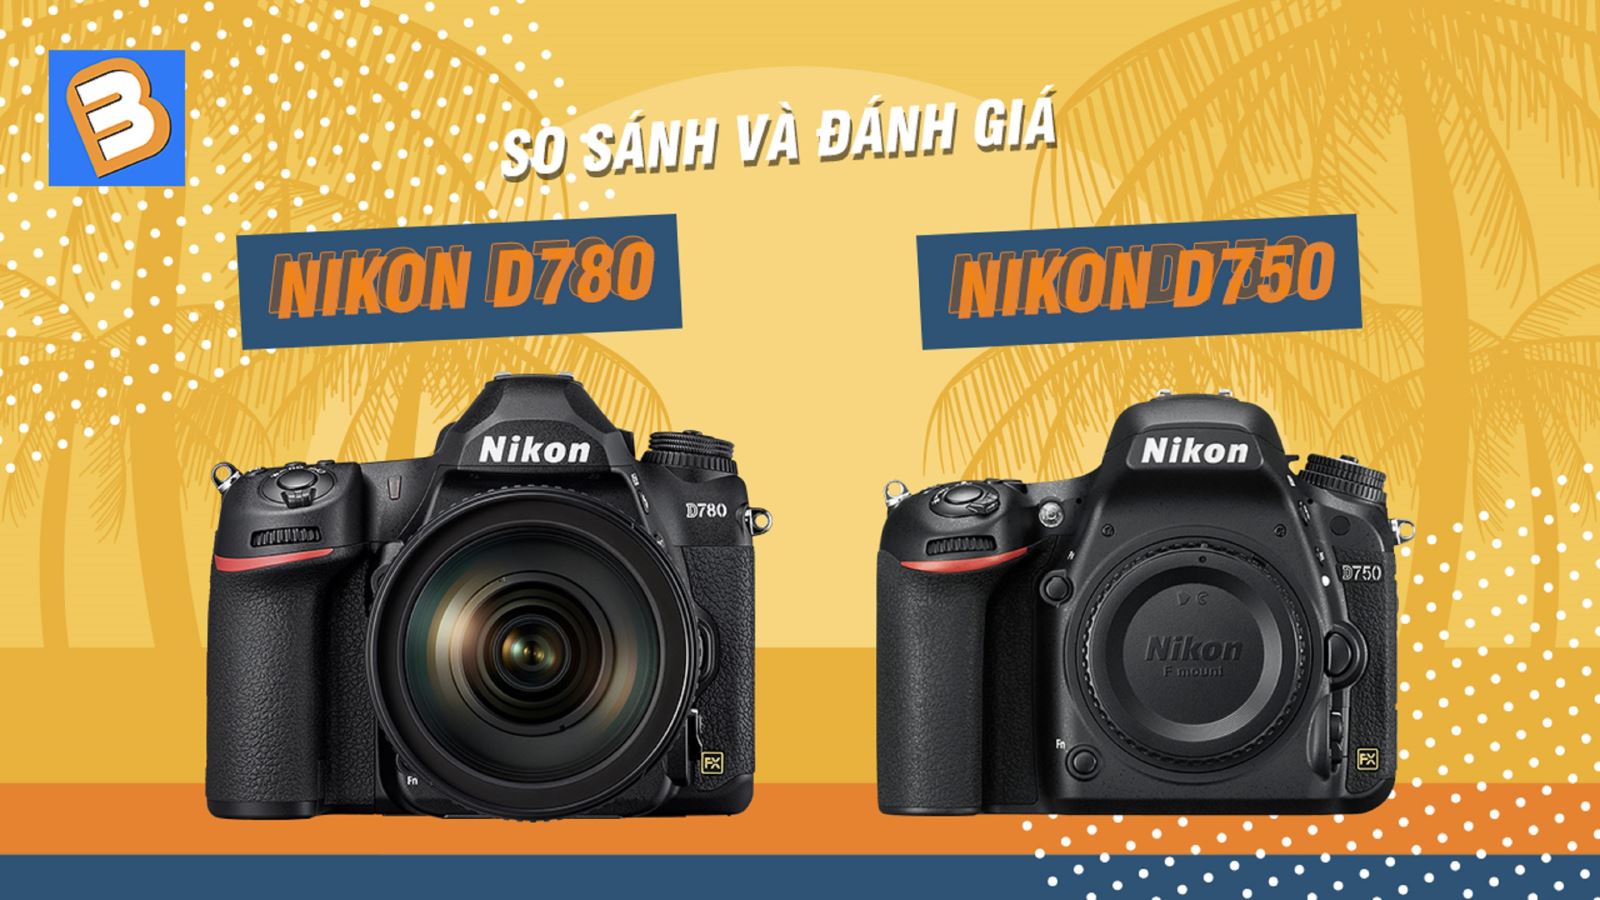 Nikon D780 và D750 - So sánh và đánh giá